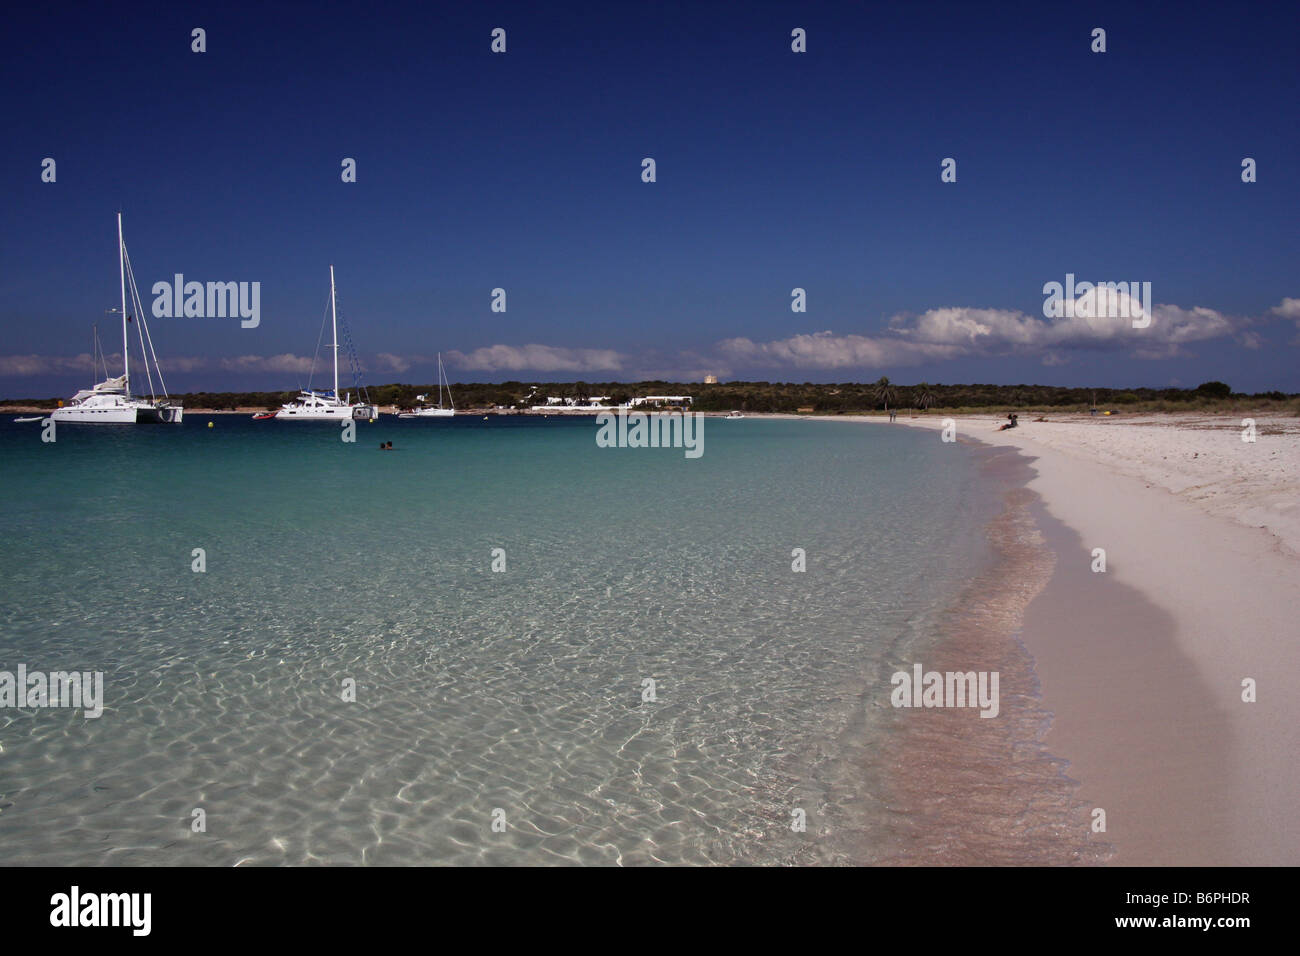 Segelschiffe verankert in Isla de S'Espalmador, einer kleinen Insel neben Formentera und Ibiza, gesehen vom Strand Stockfoto